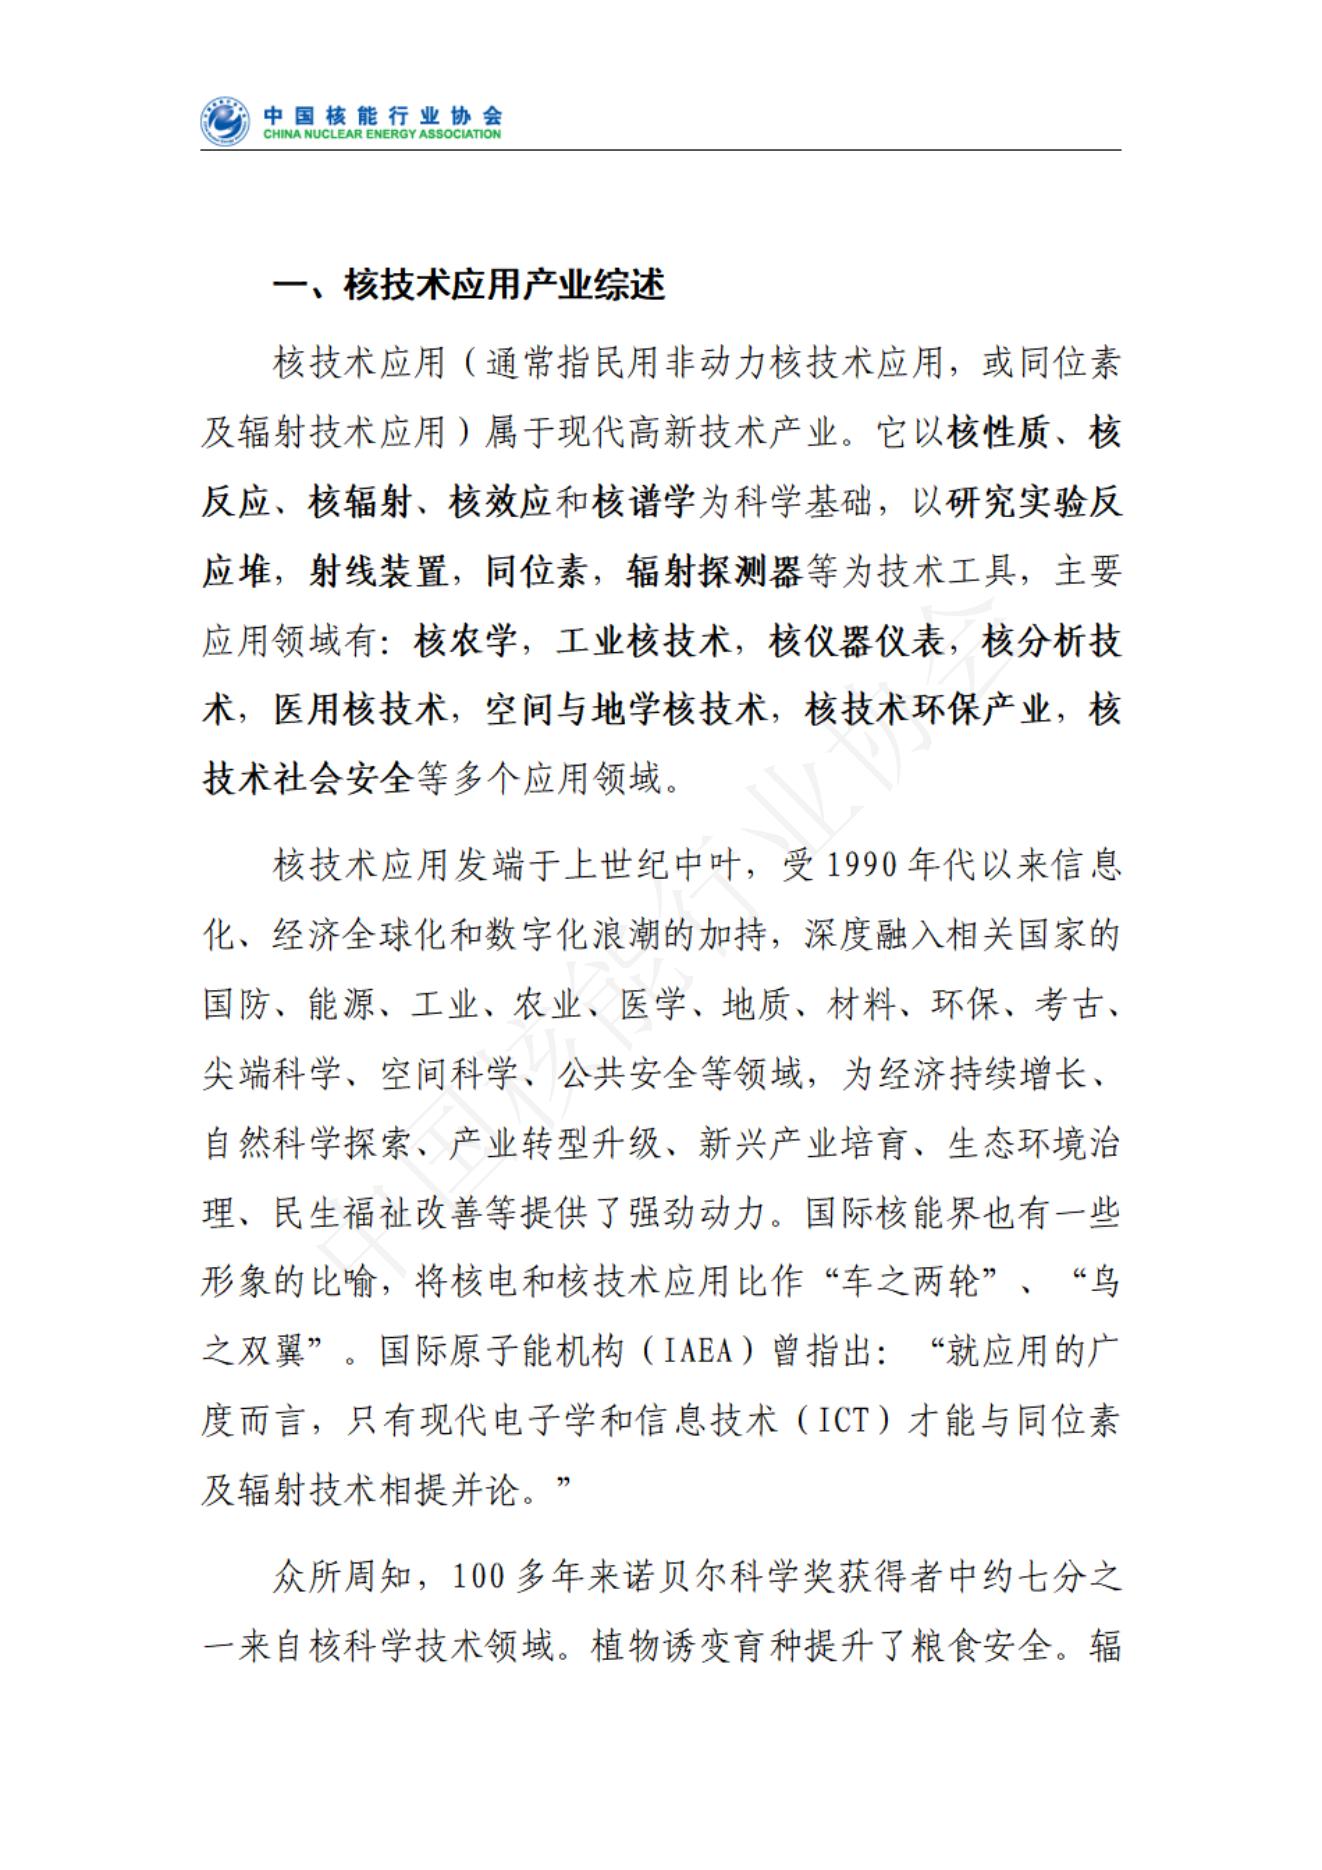 中国核技术应用产业发展报告核心报告（发布稿）(1)_01.jpg